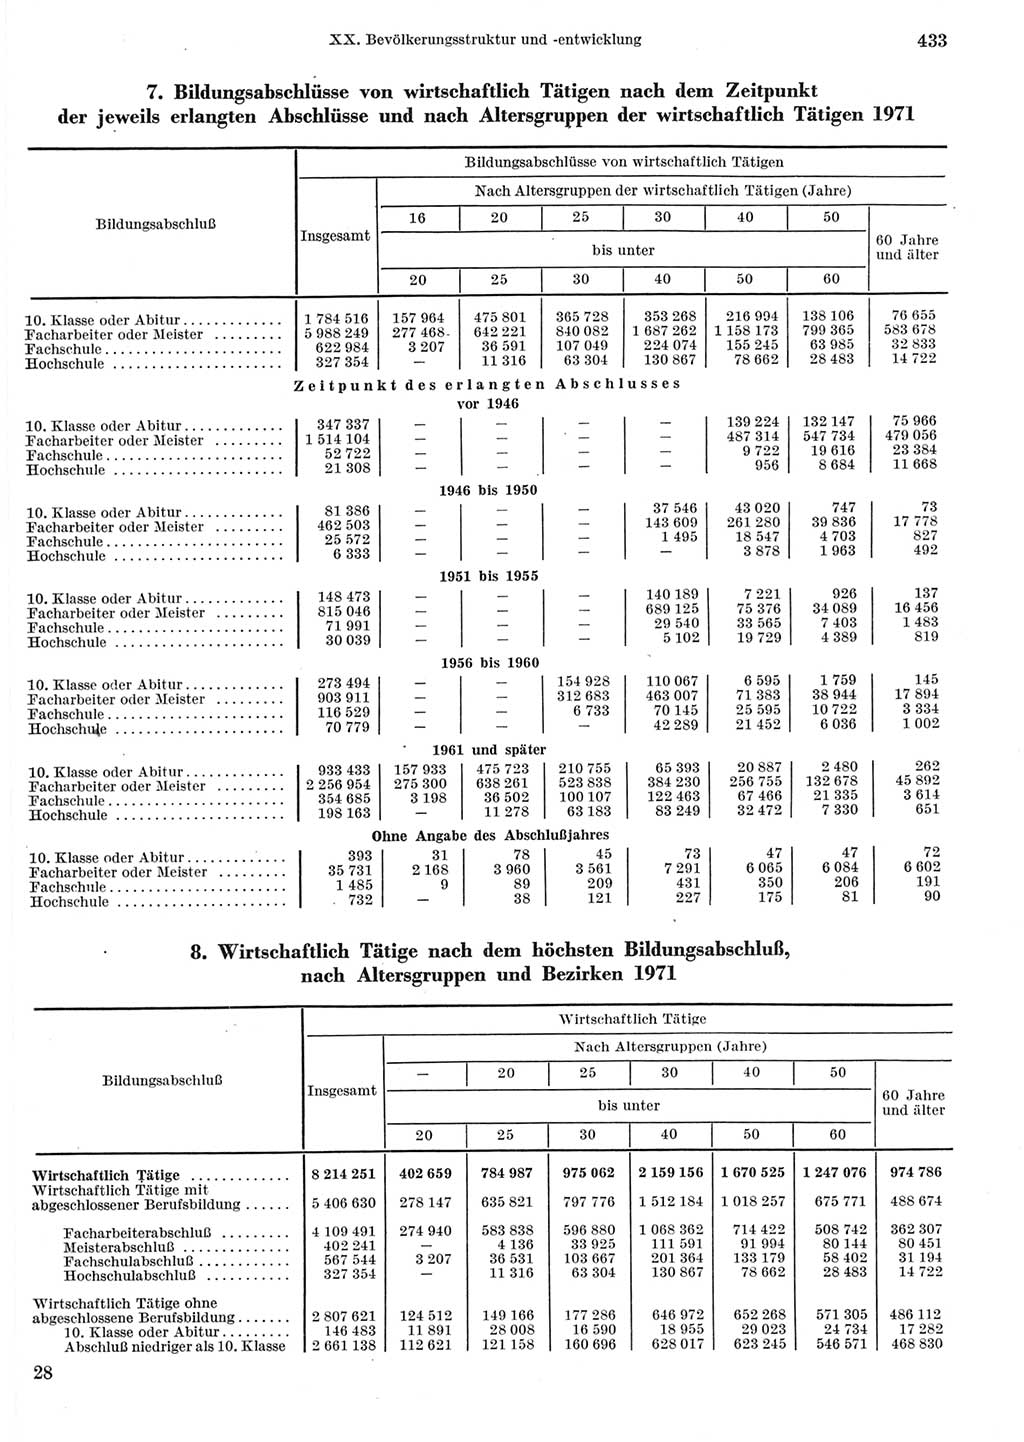 Statistisches Jahrbuch der Deutschen Demokratischen Republik (DDR) 1973, Seite 433 (Stat. Jb. DDR 1973, S. 433)